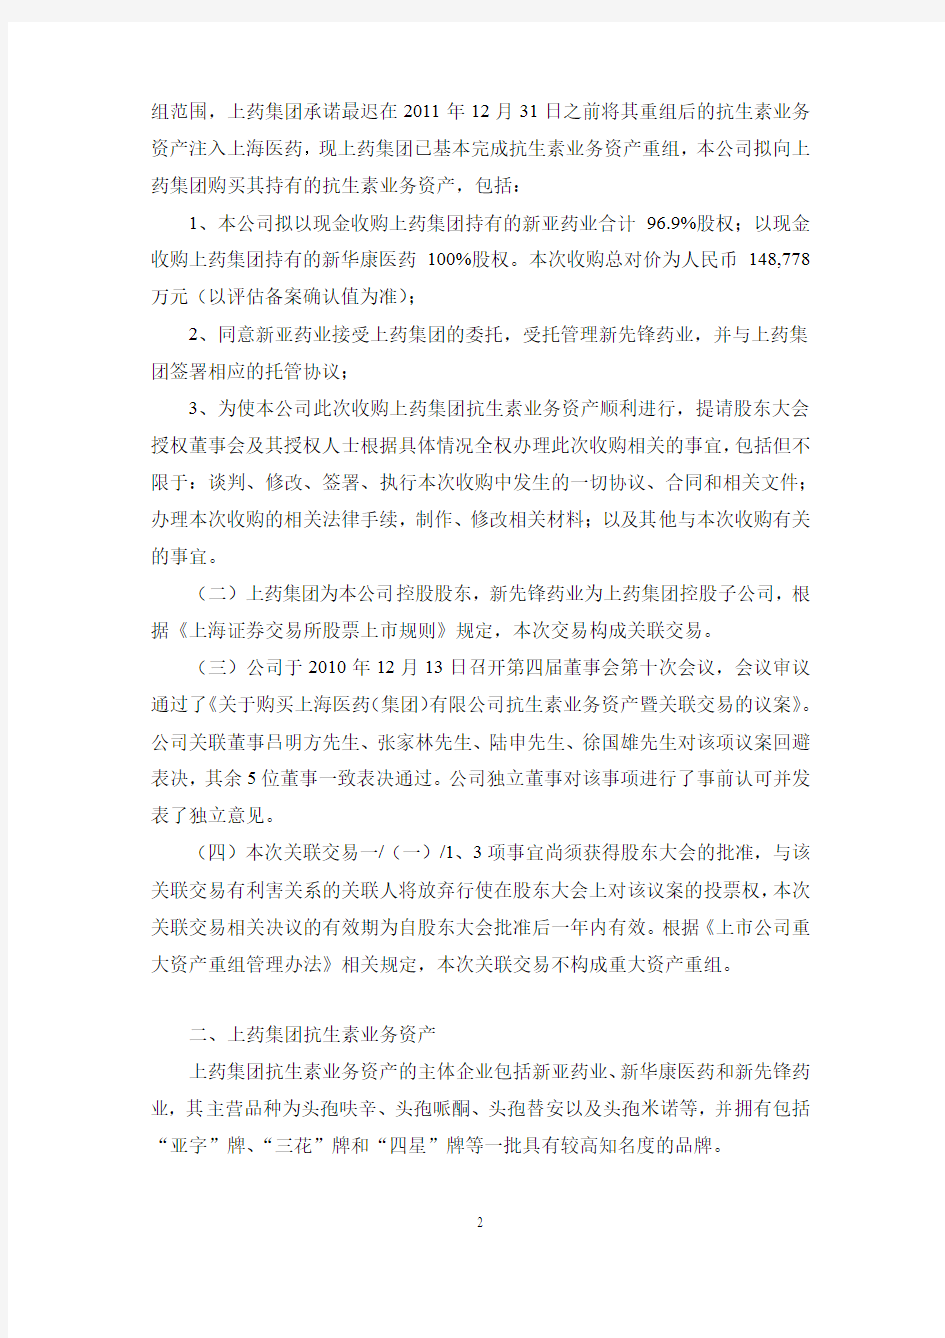 上海医药集团股份有限公司 收购资产暨关联交易公告